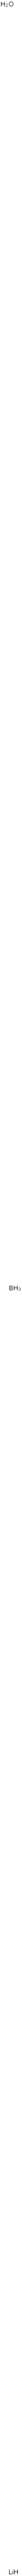 Lithium borate Structure